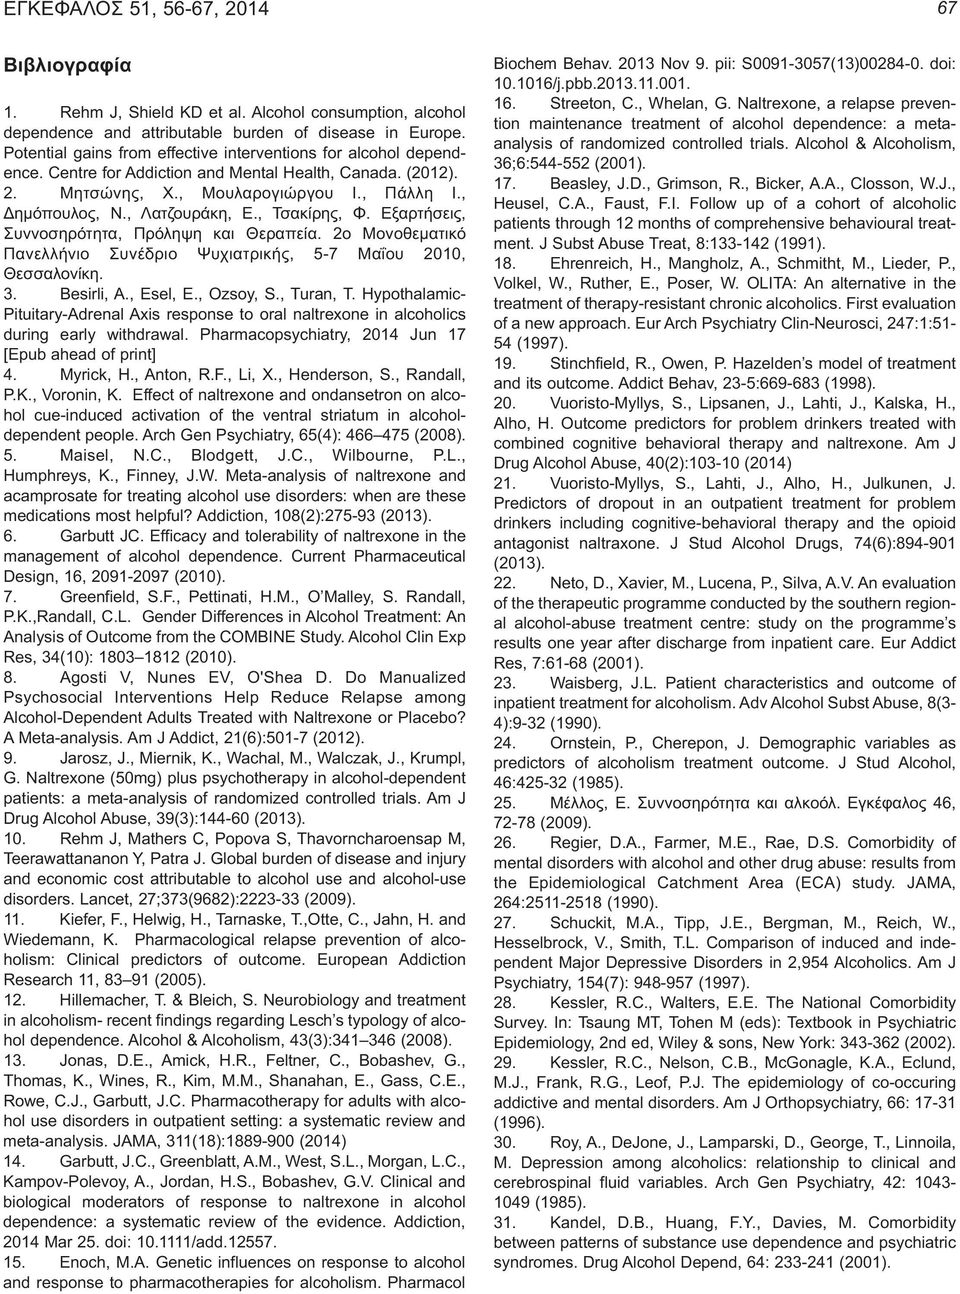 2ο Μονοθεµατικό Πανελλήνιο Συνέδριο Ψυχιατρικής, 5-7 Μαΐου 2010, Θεσσαλονίκη. 3. Besirli, A., Esel, E., Ozsoy, S., Turan, T.